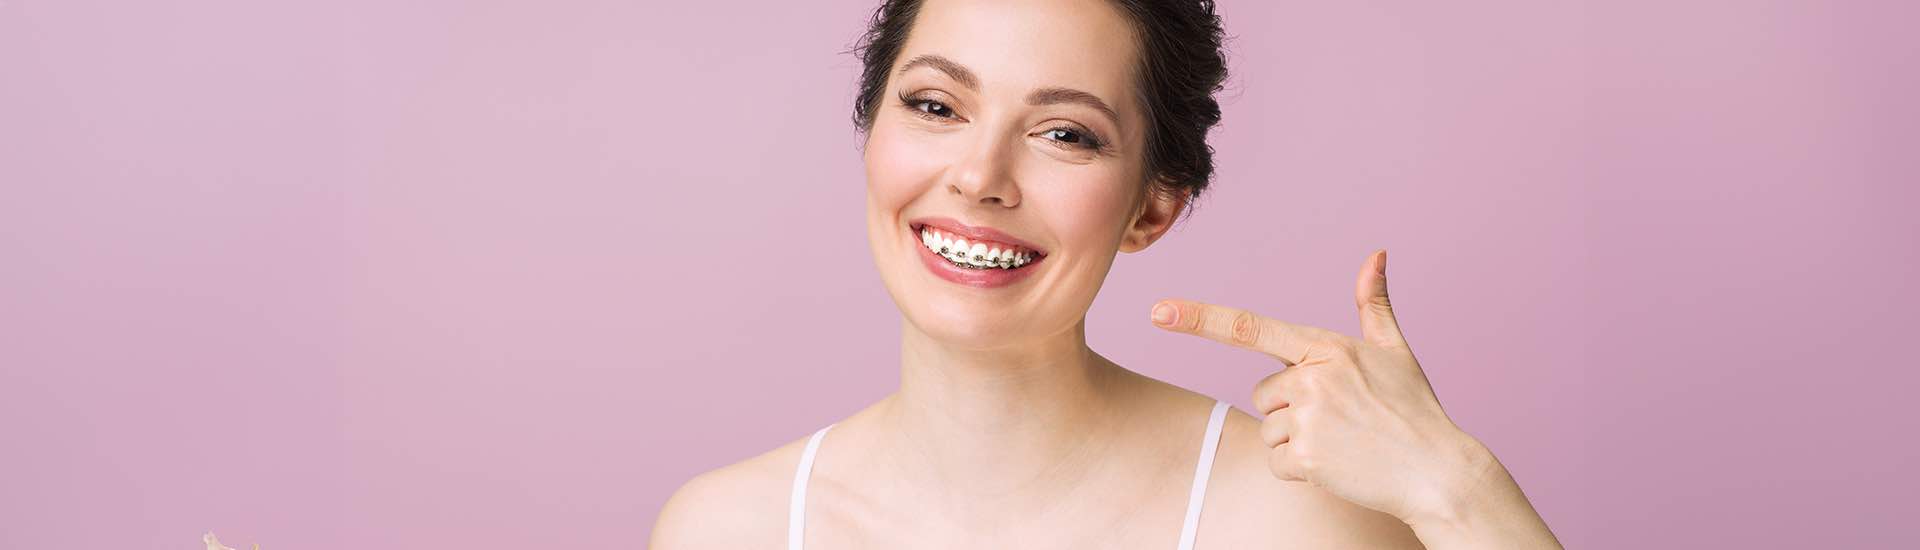 Czy warto prostować zęby? Aparat ortodontyczny – plusy i minusy